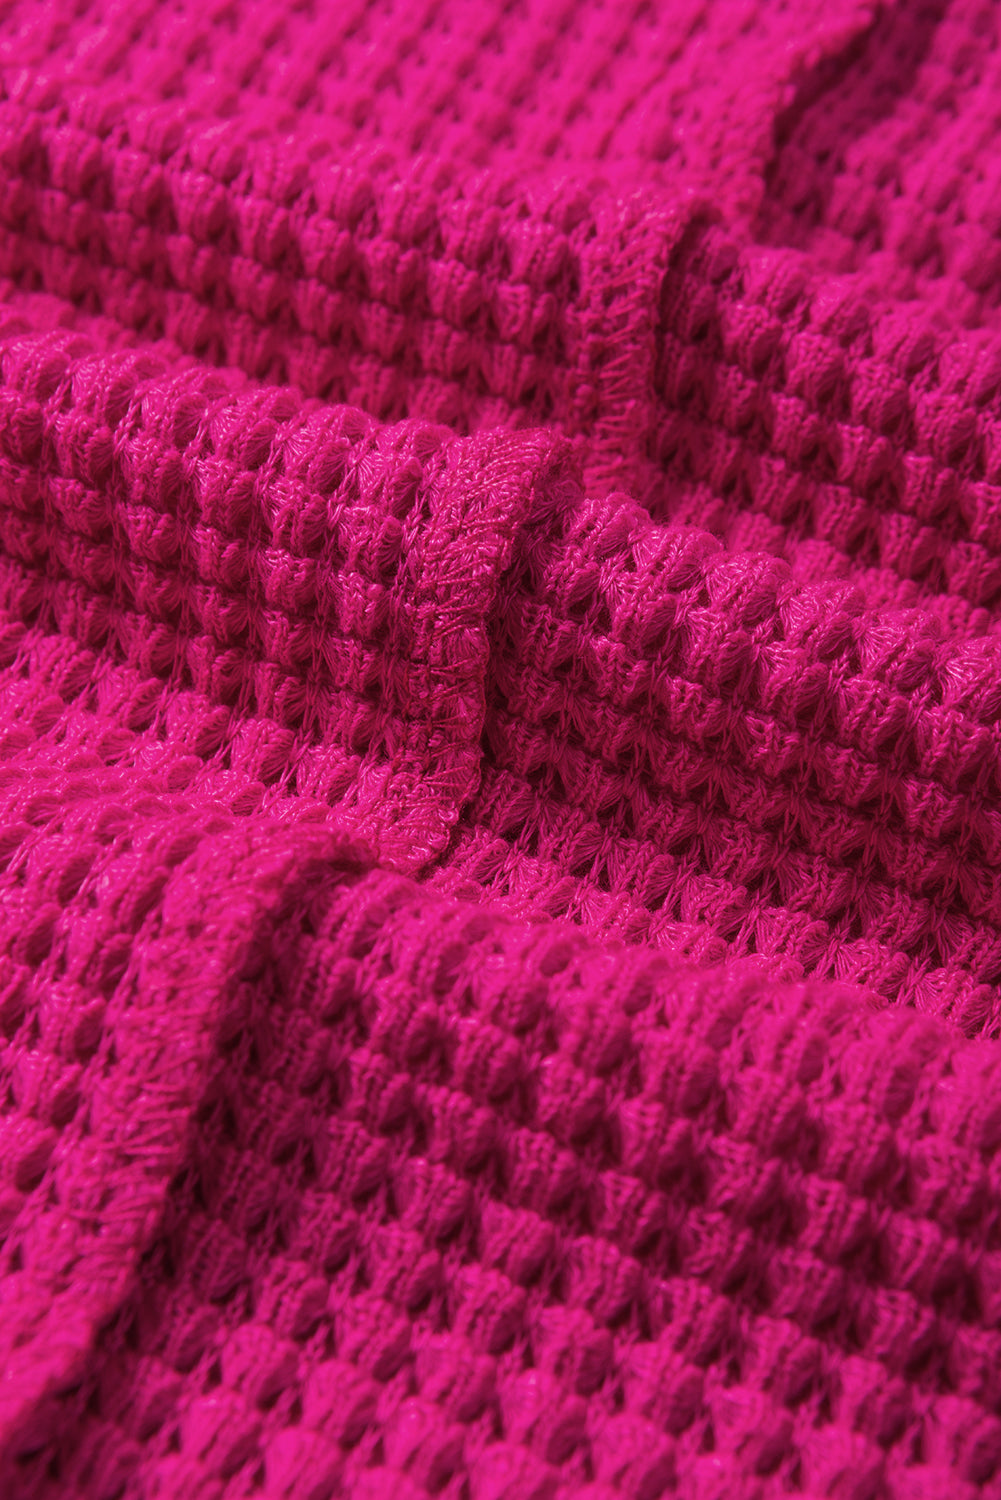 Rožnato rdeča teksturirana majica z dolgimi rokavi na sredinskem šivu